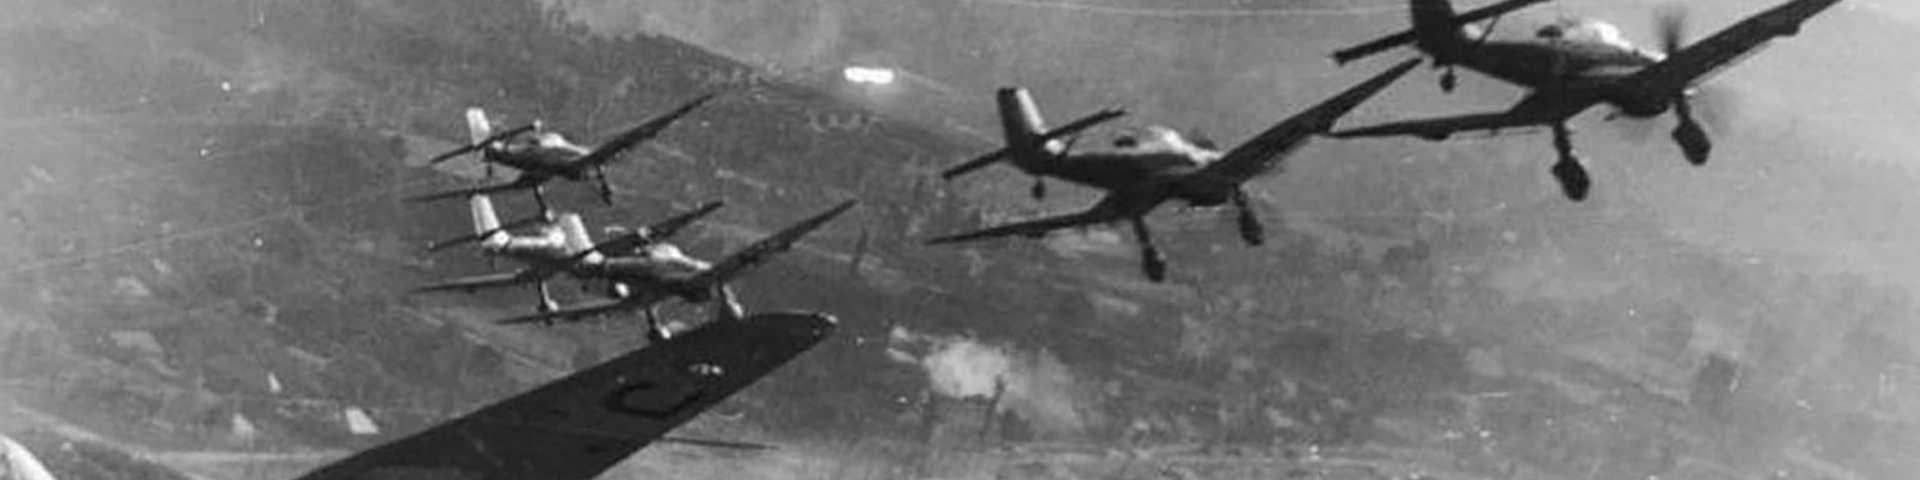 Шести ловачки пук и ваздушна битка над Београдом 6. априла 1941: Икарово братство